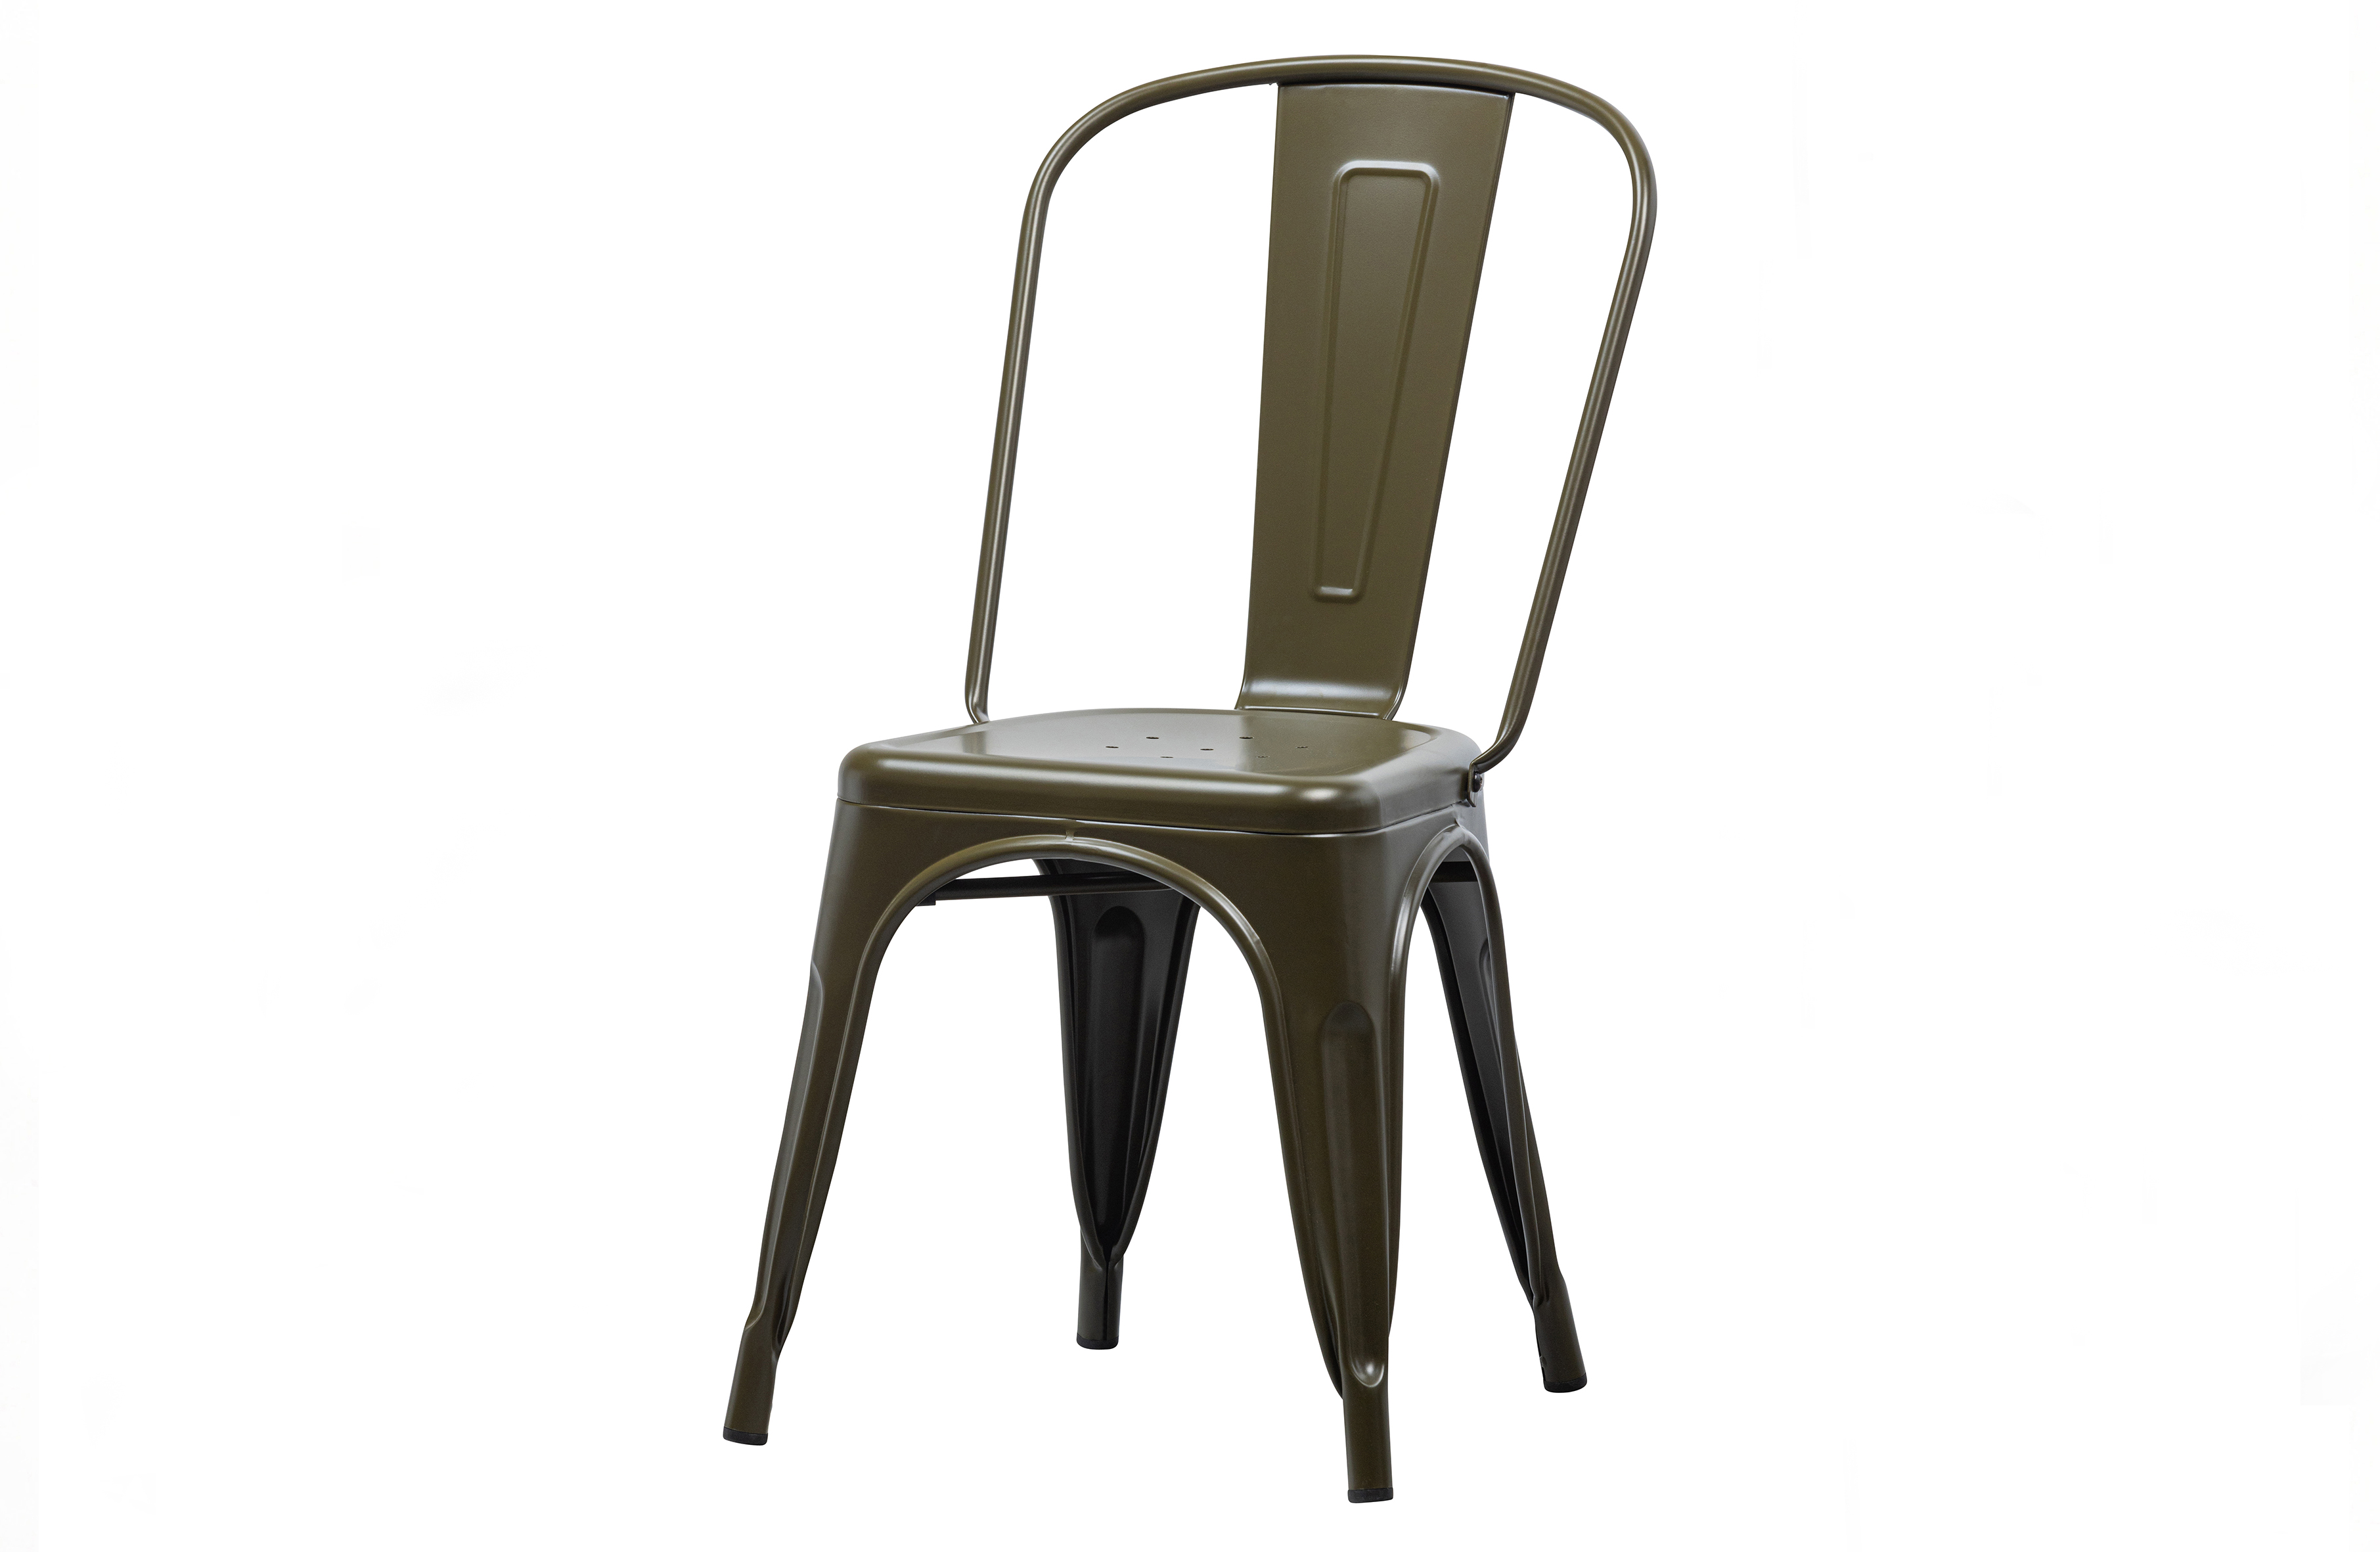 VTWONEN Afternoon spisebordsstol til inde og ude - camouflage grøn metal